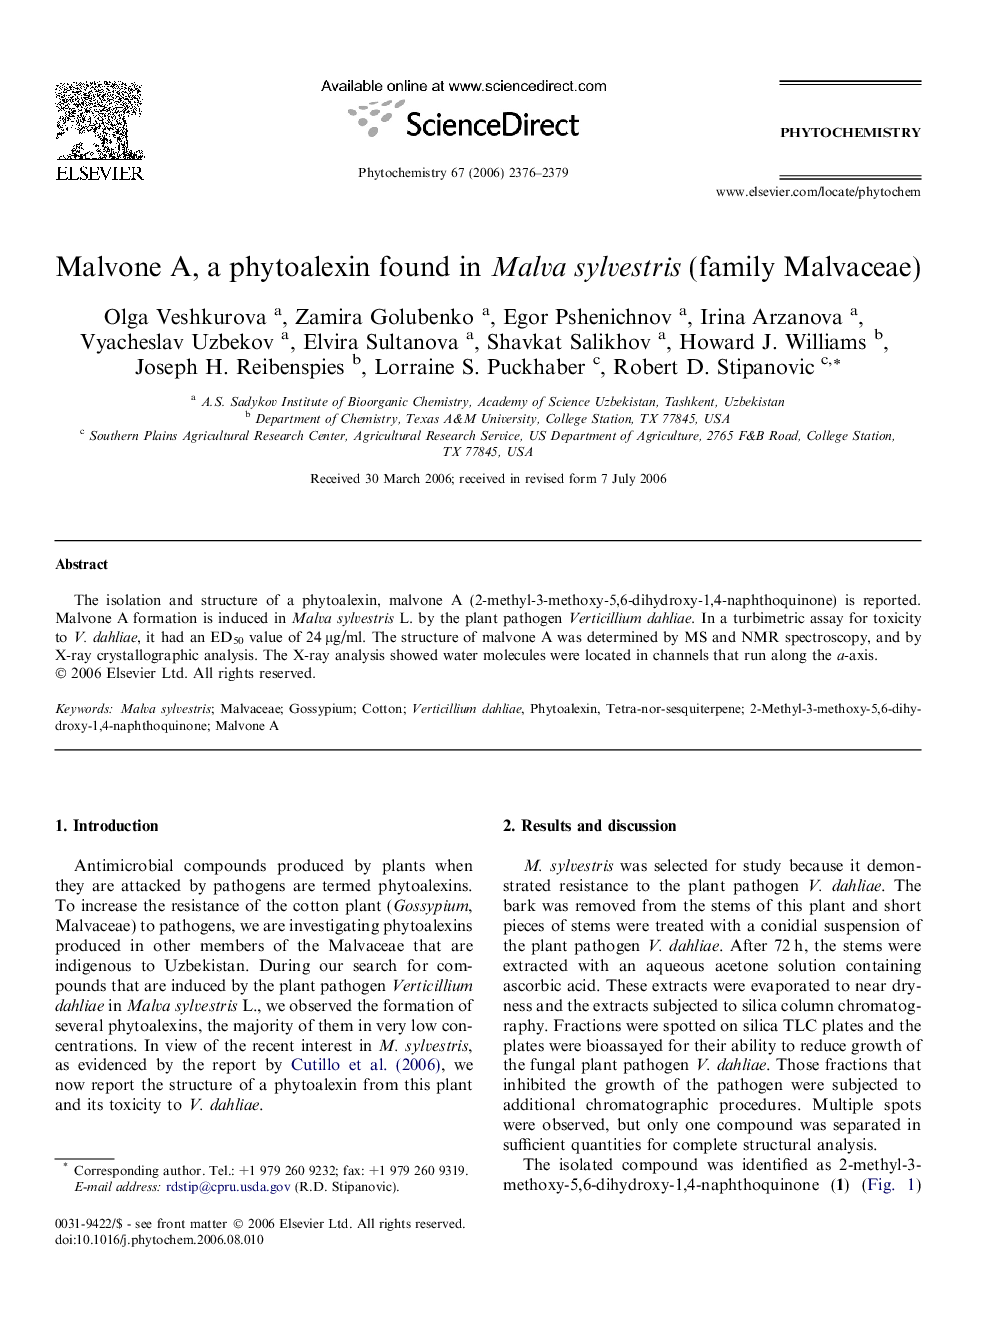 Malvone A, a phytoalexin found in Malva sylvestris (family Malvaceae)